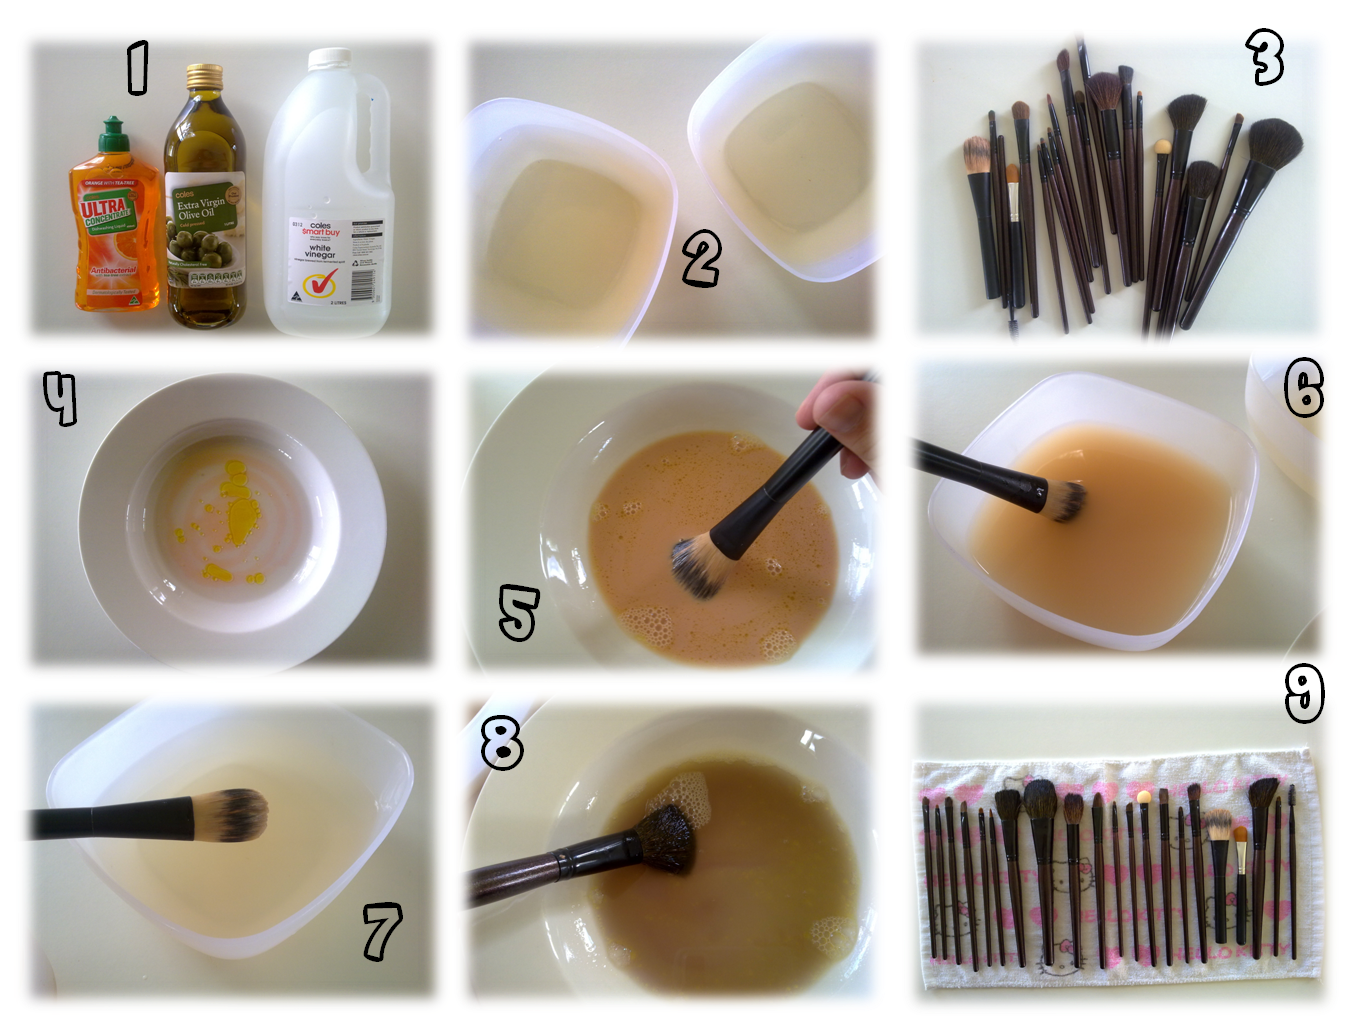 Очищение и уход за спонжами и кисточками для макияжа в домашних условиях